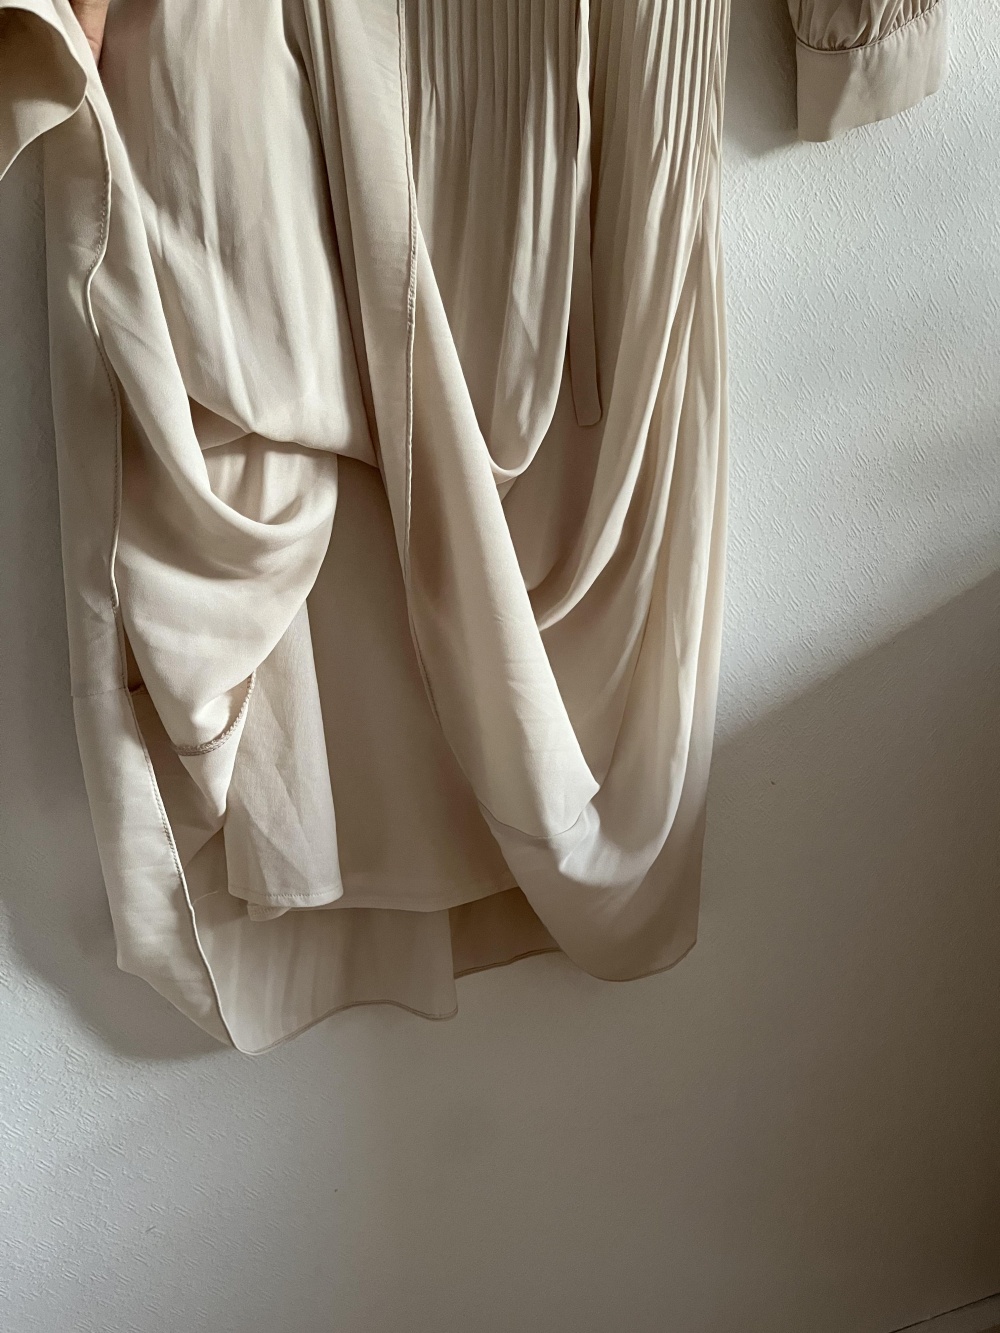 Платье Of White, размер 44